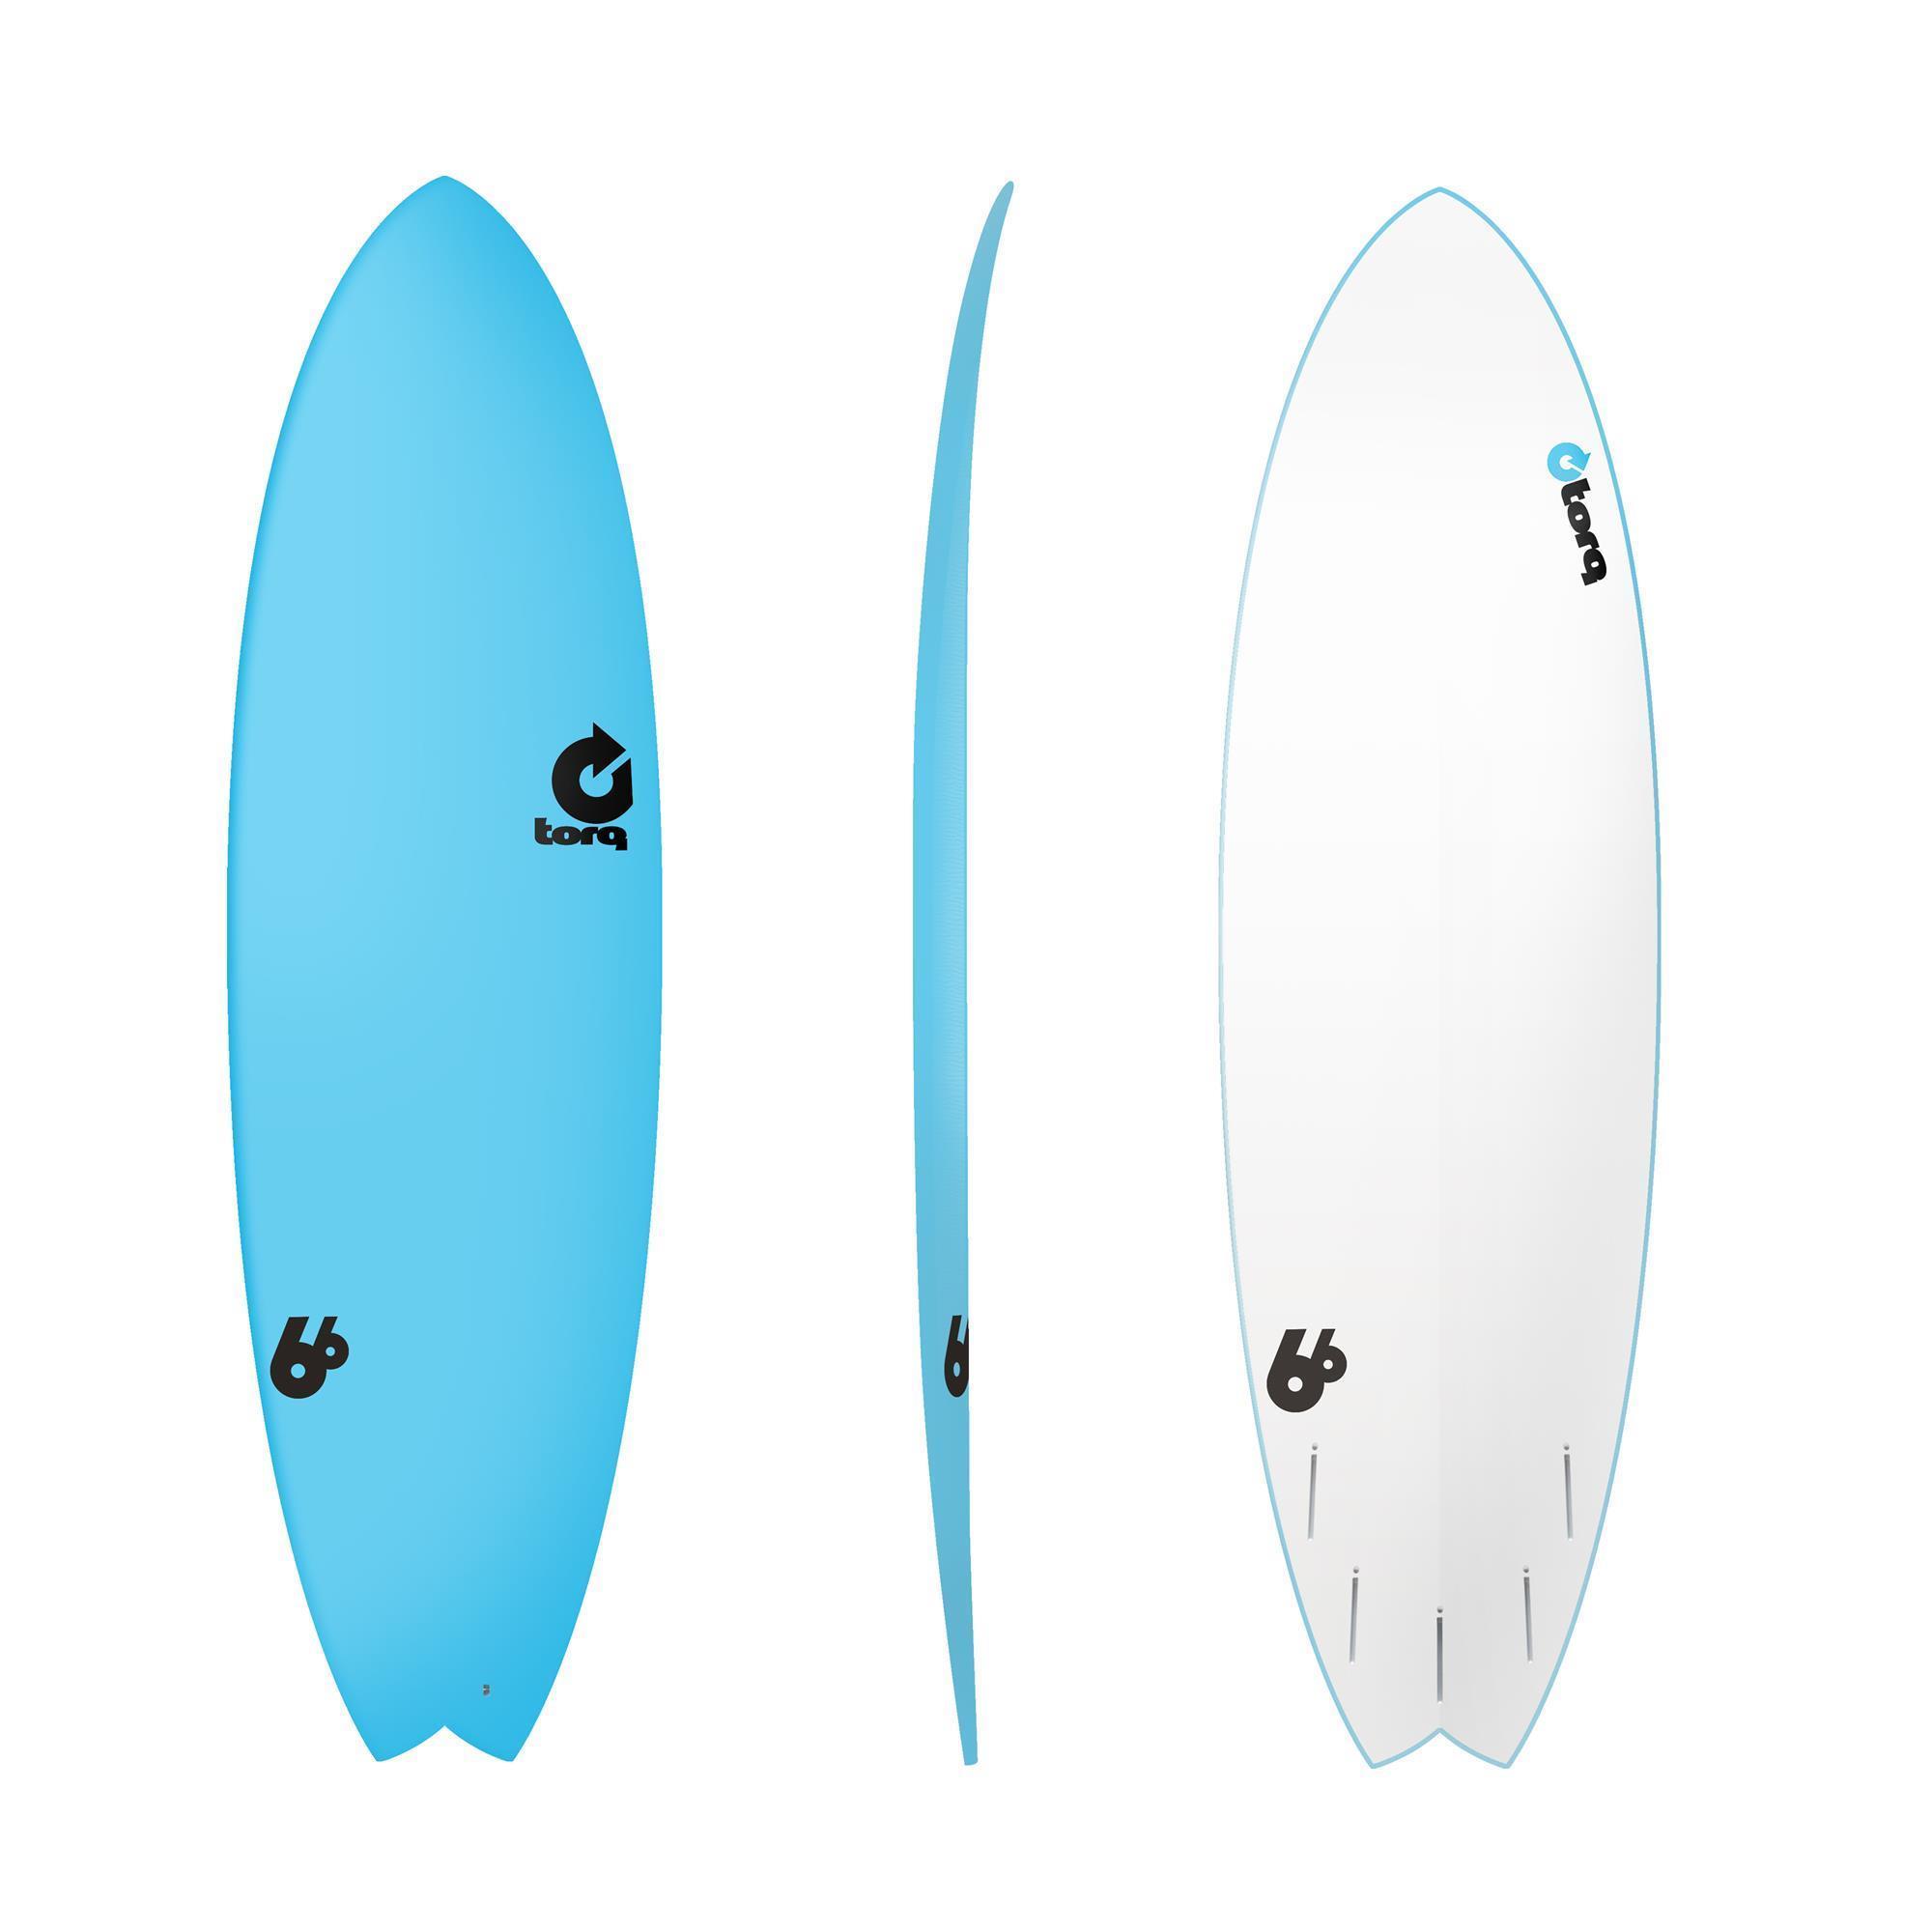 Surfboard TORQ Softboard 6.6 Fish Blue